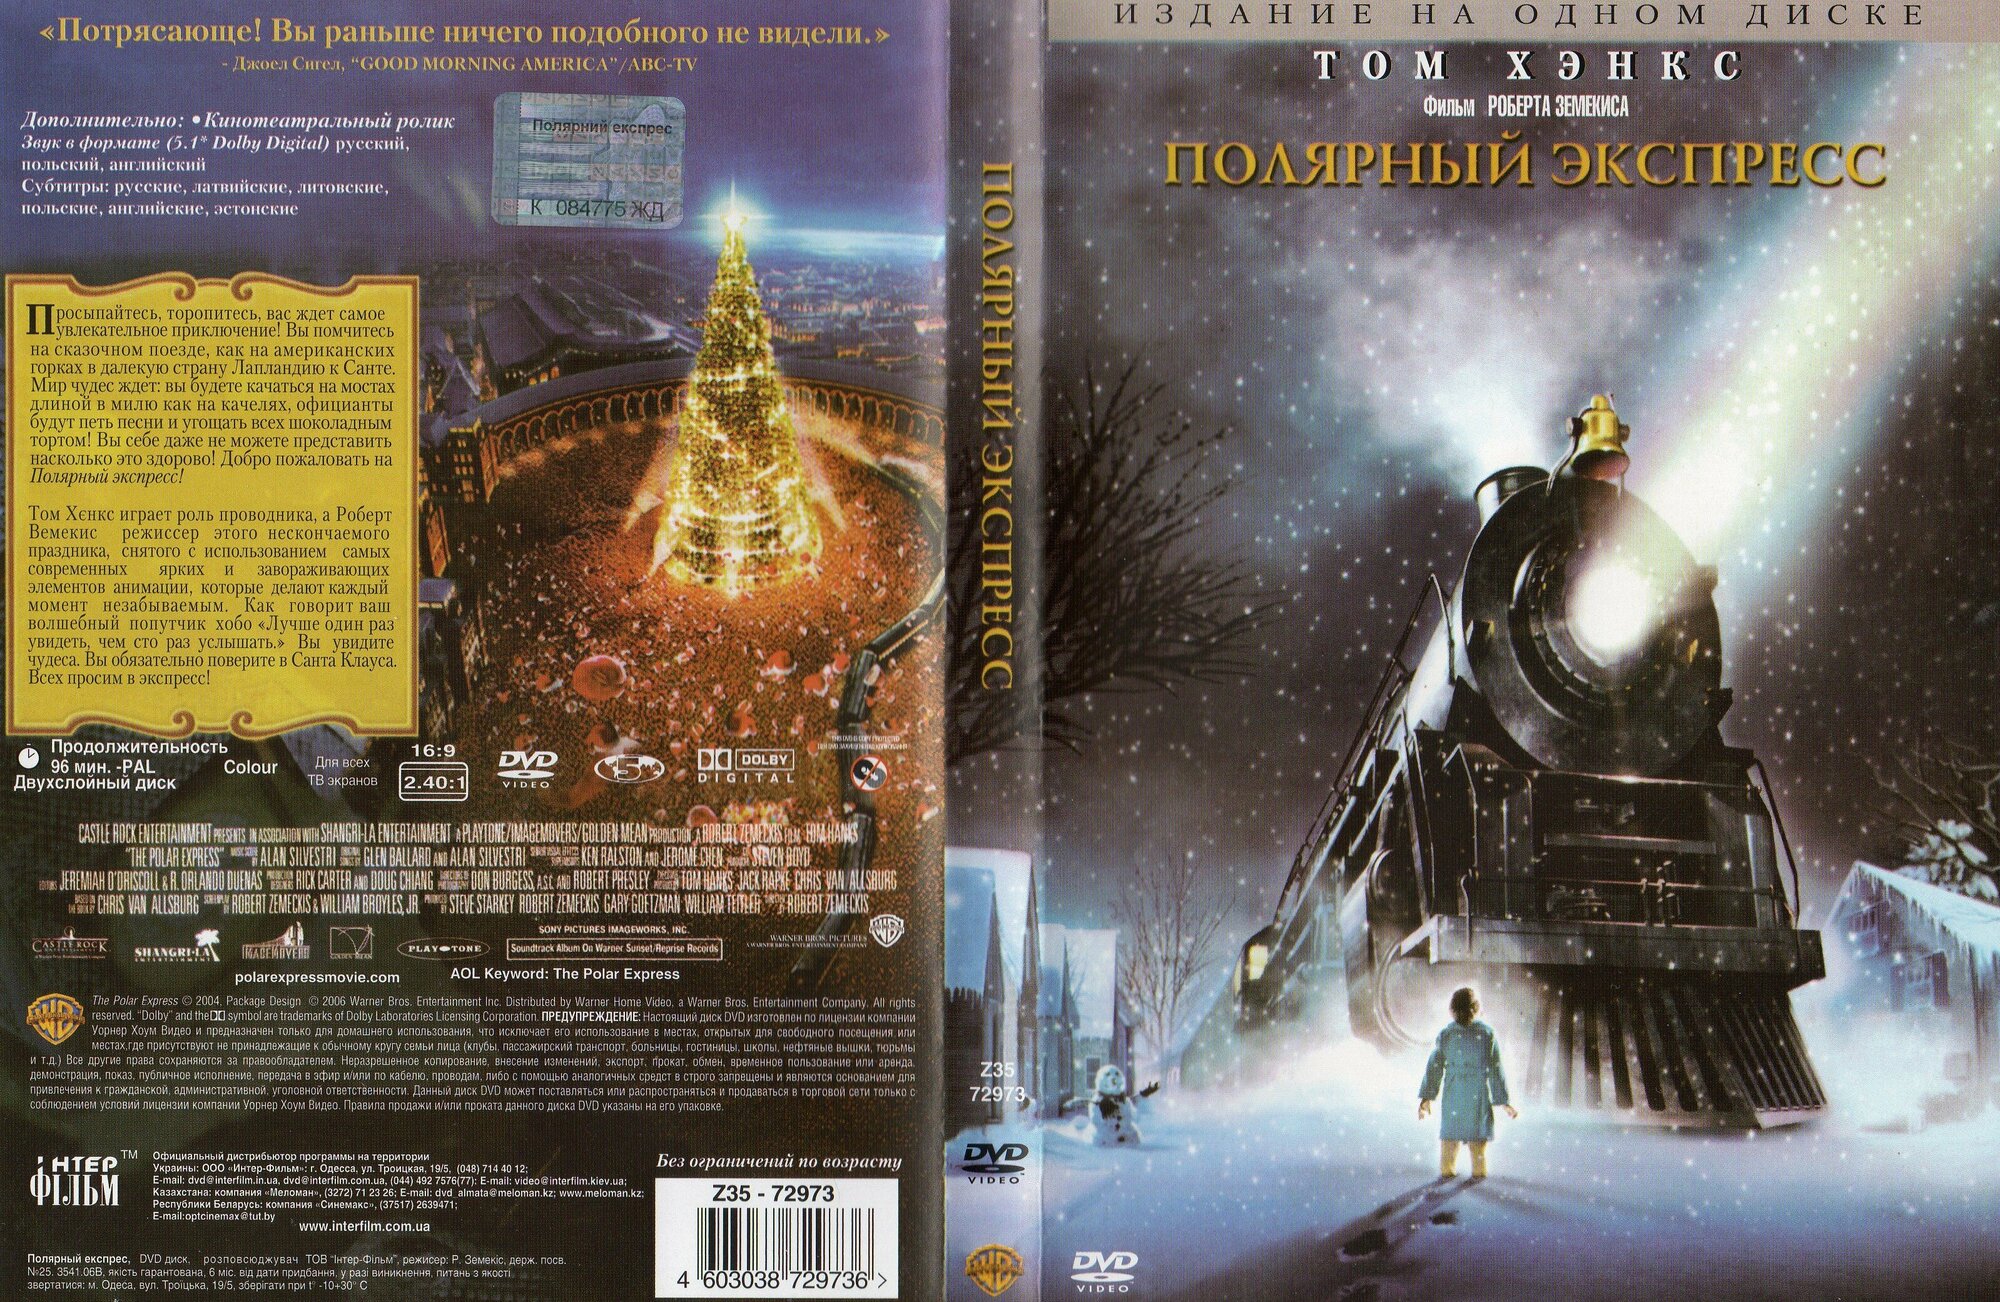 Мультфильм " Полярный экспресс" 2004г. DVD